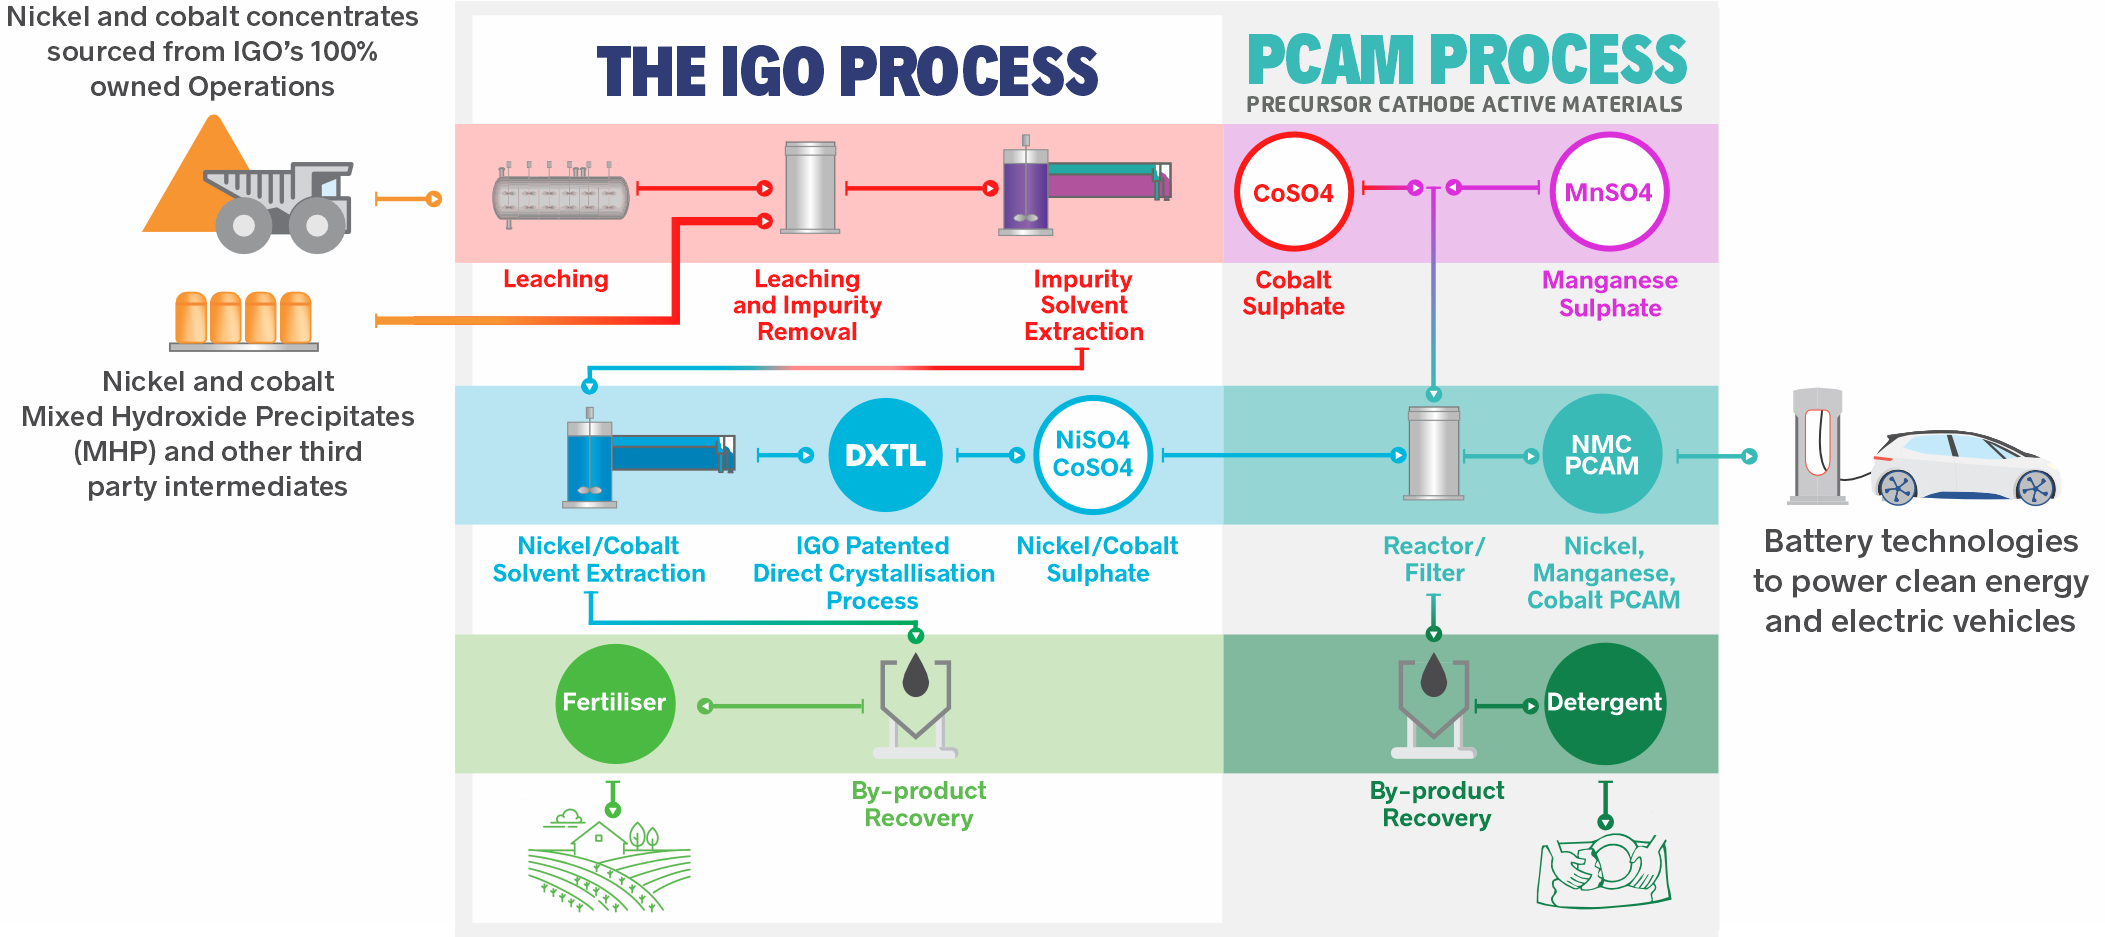 The IGO Process and PCAM